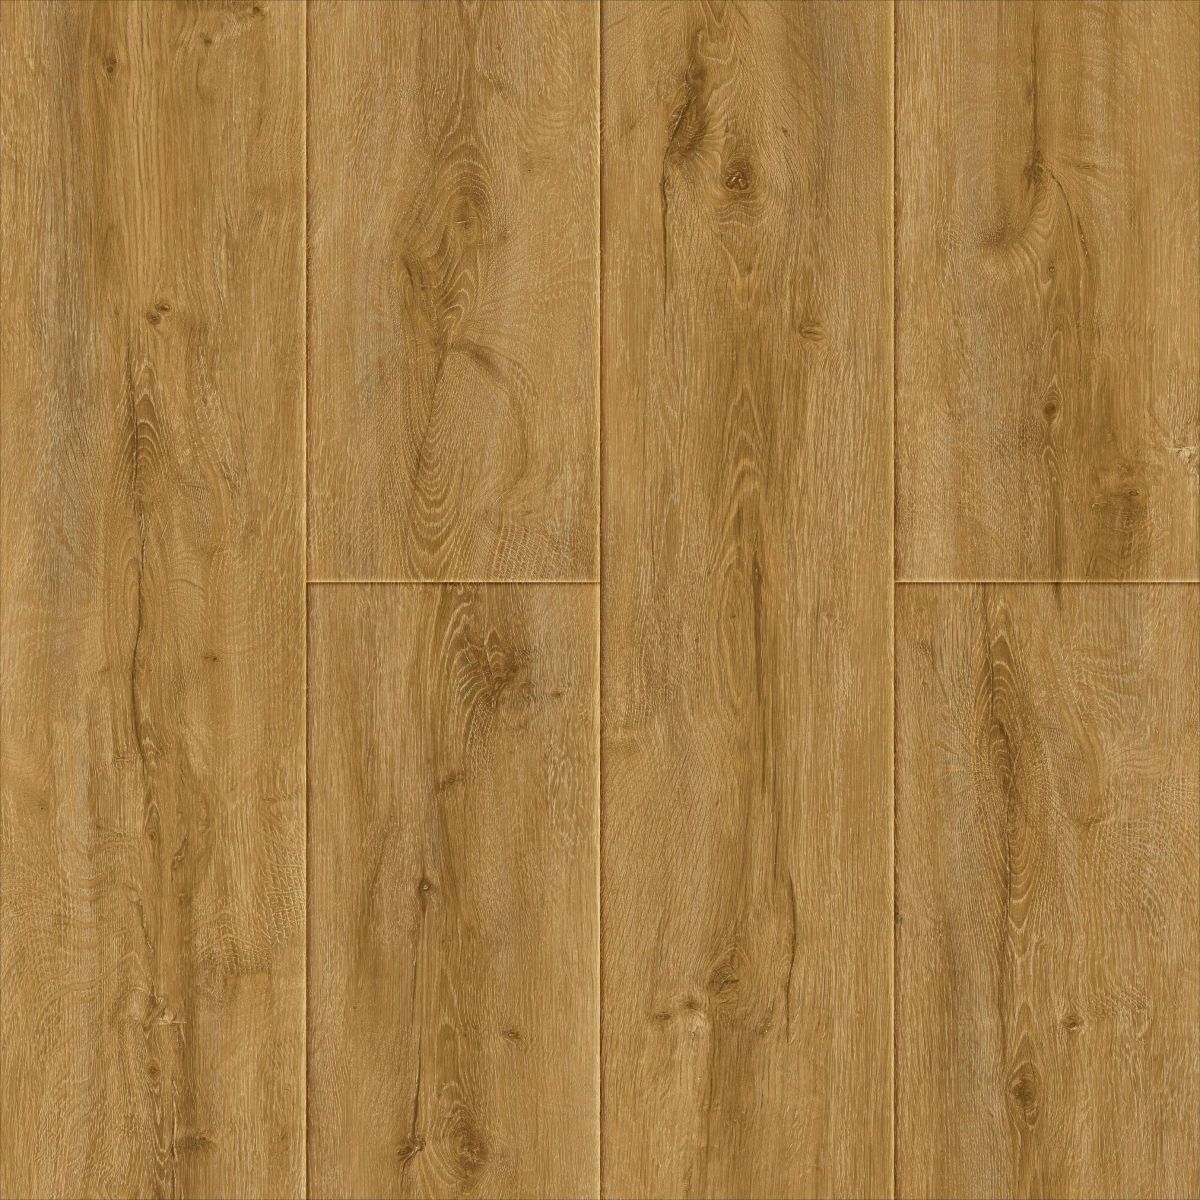 Hanflor Vinyl Plank Flooring-Waterproof Click Lock Wood Grain-4.5mm SPC  Rigid Core flooring-Buy More Save More, EIR (Embossed in Register)  Authentic Texture